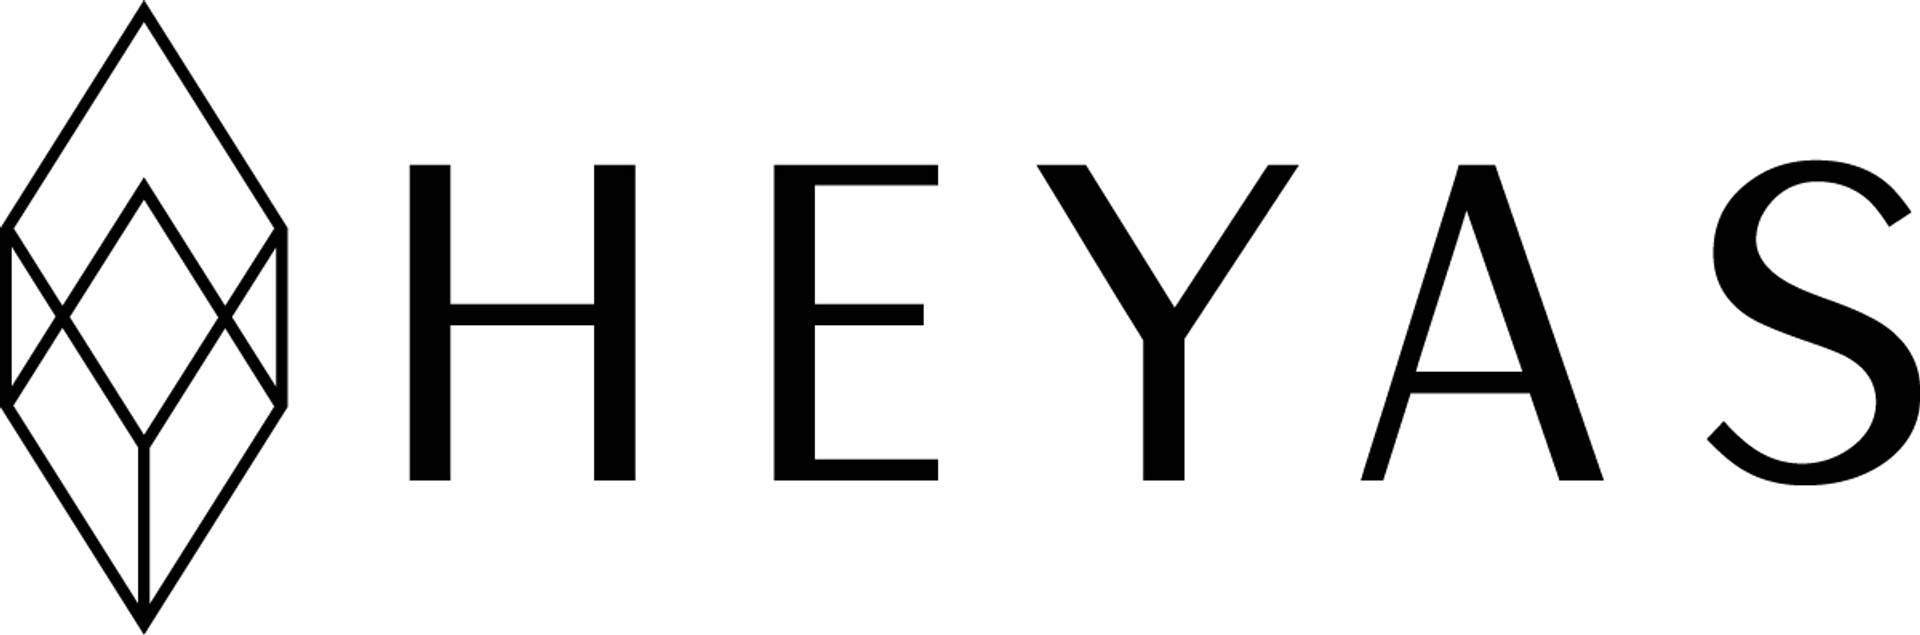 HEYAS logo